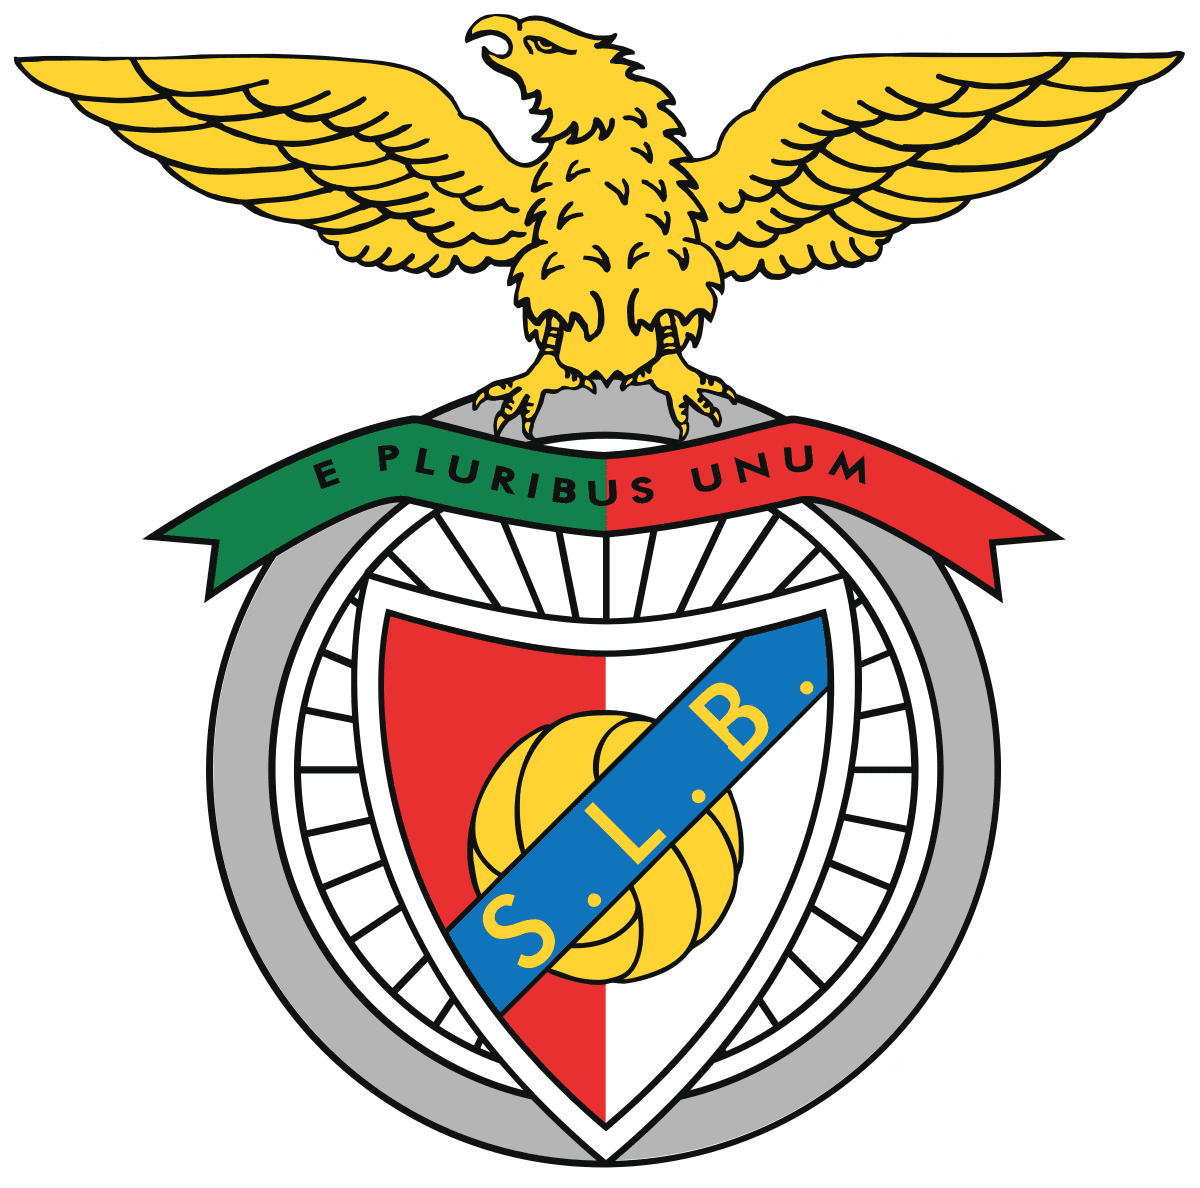 SL_Benfica_logo